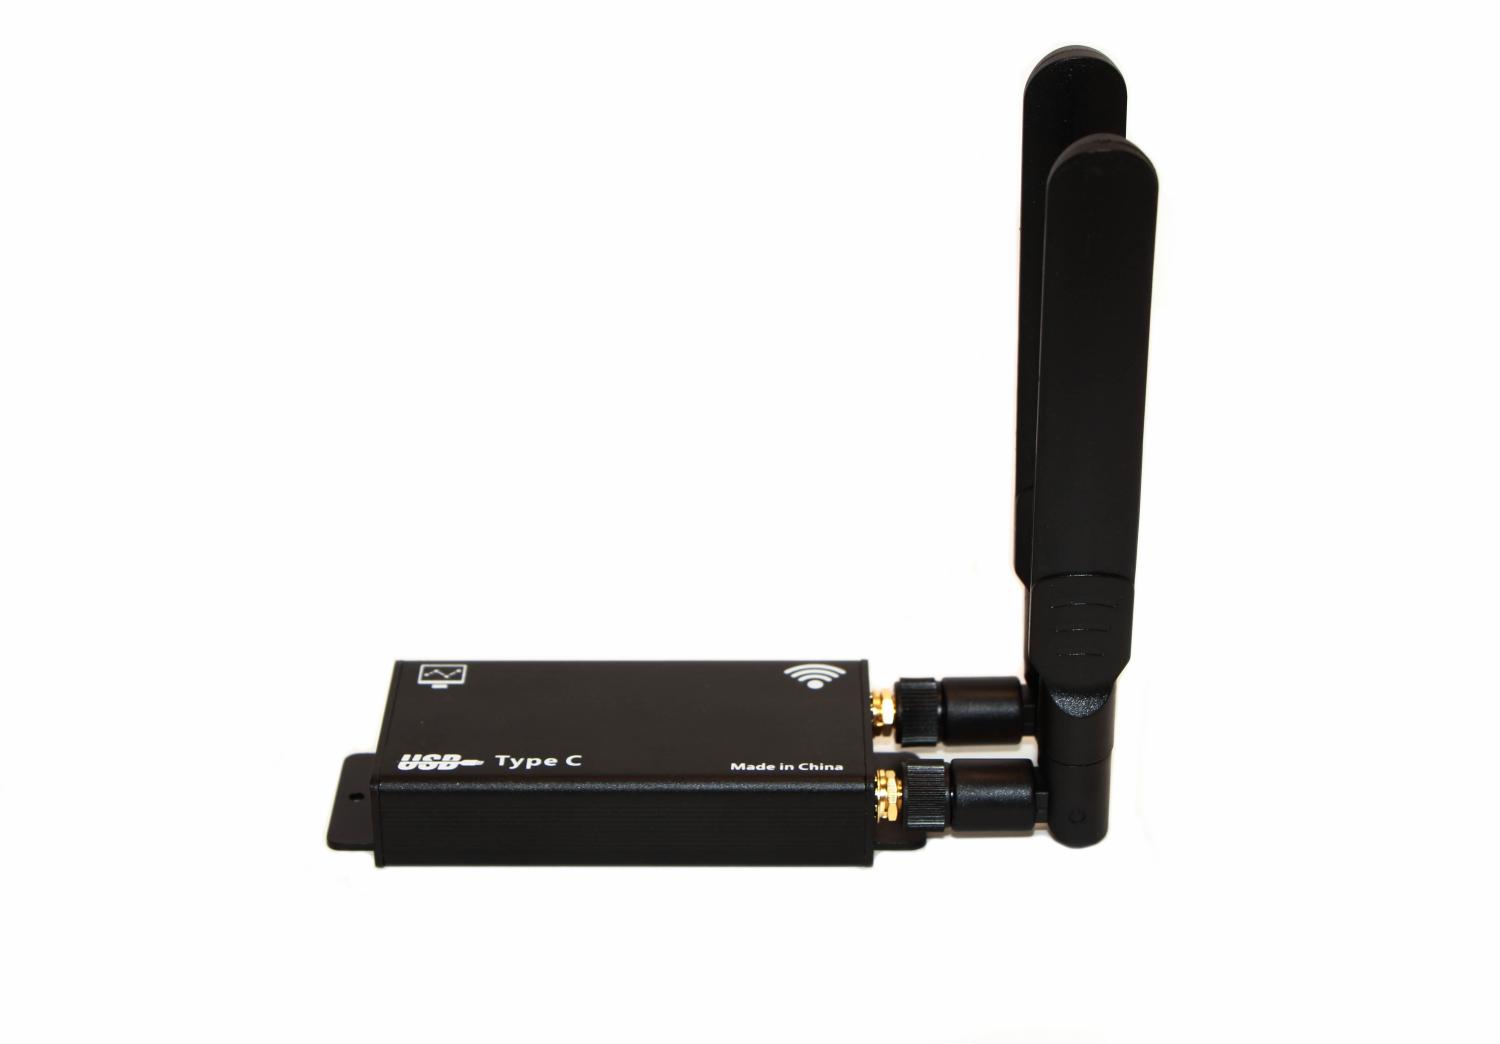 Детальное изображение товара "Модем 4G/LTE Quectel EP06-E Cat.6 в USB BOX 2.0" из каталога оборудования Антенна76